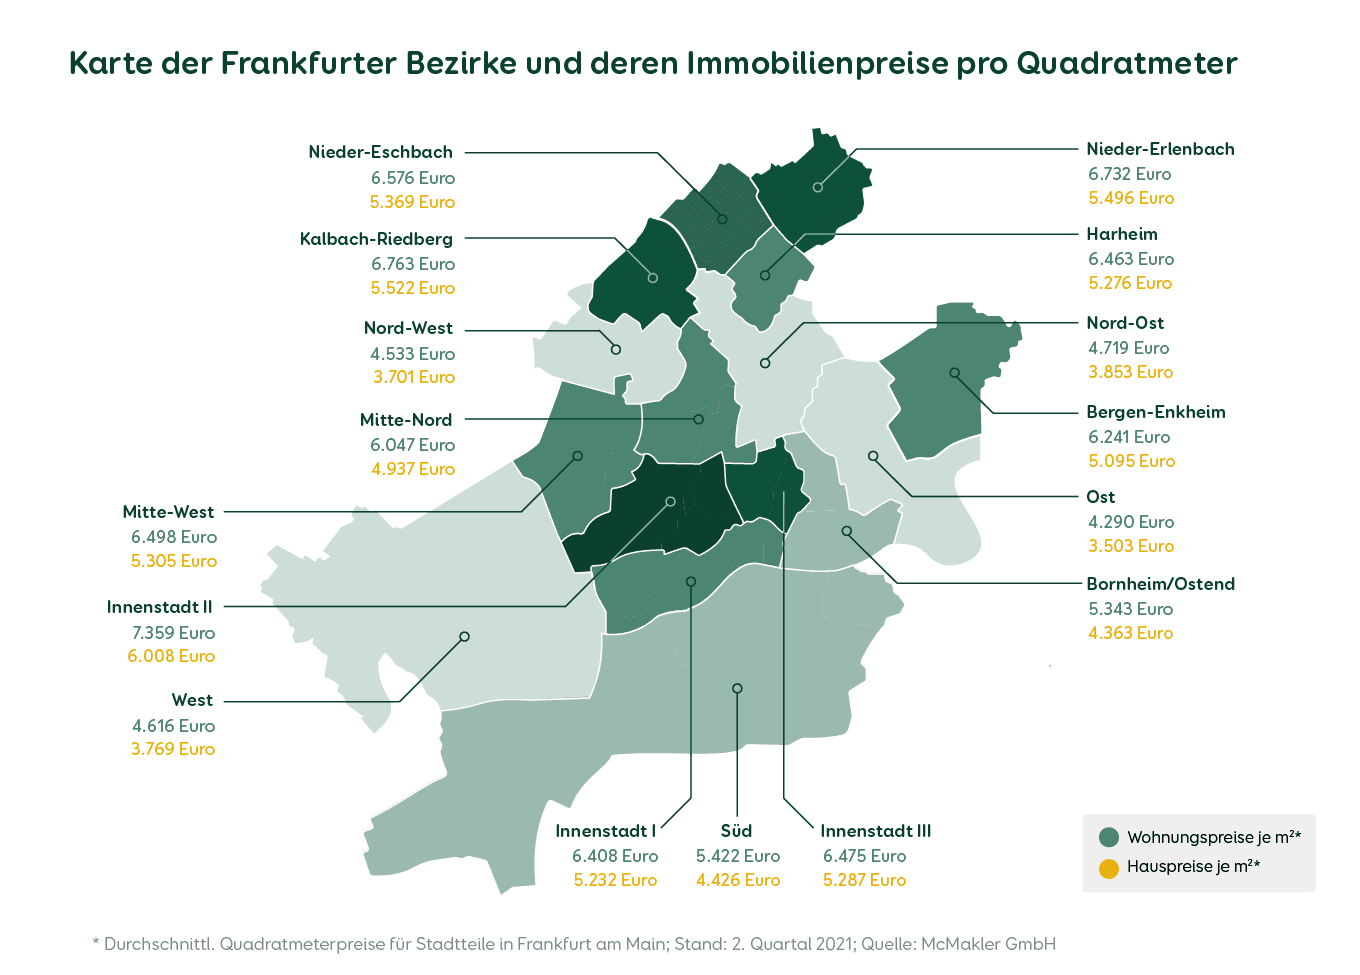 Wohnungs- und Hauspreise in Frankfurt nach Bezirken